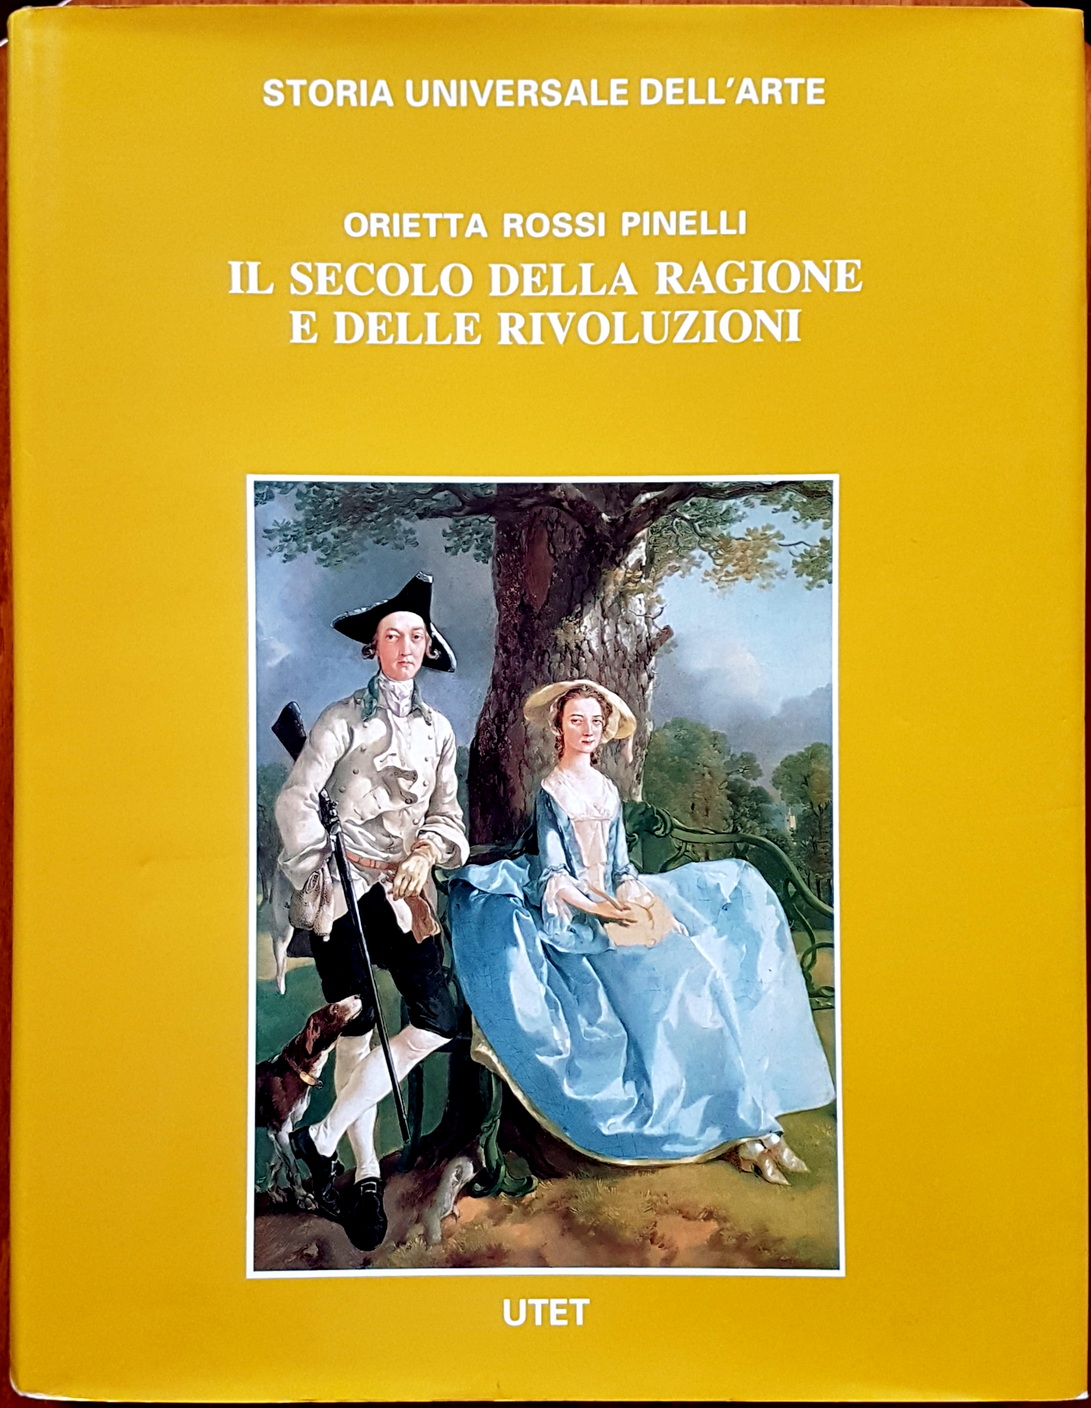 Orietta Rossi Pinelli, Il secolo della Ragione e delle Rivoluzioni. La cultura visiva nel Settecento europeo, Ed. UTET, 2000